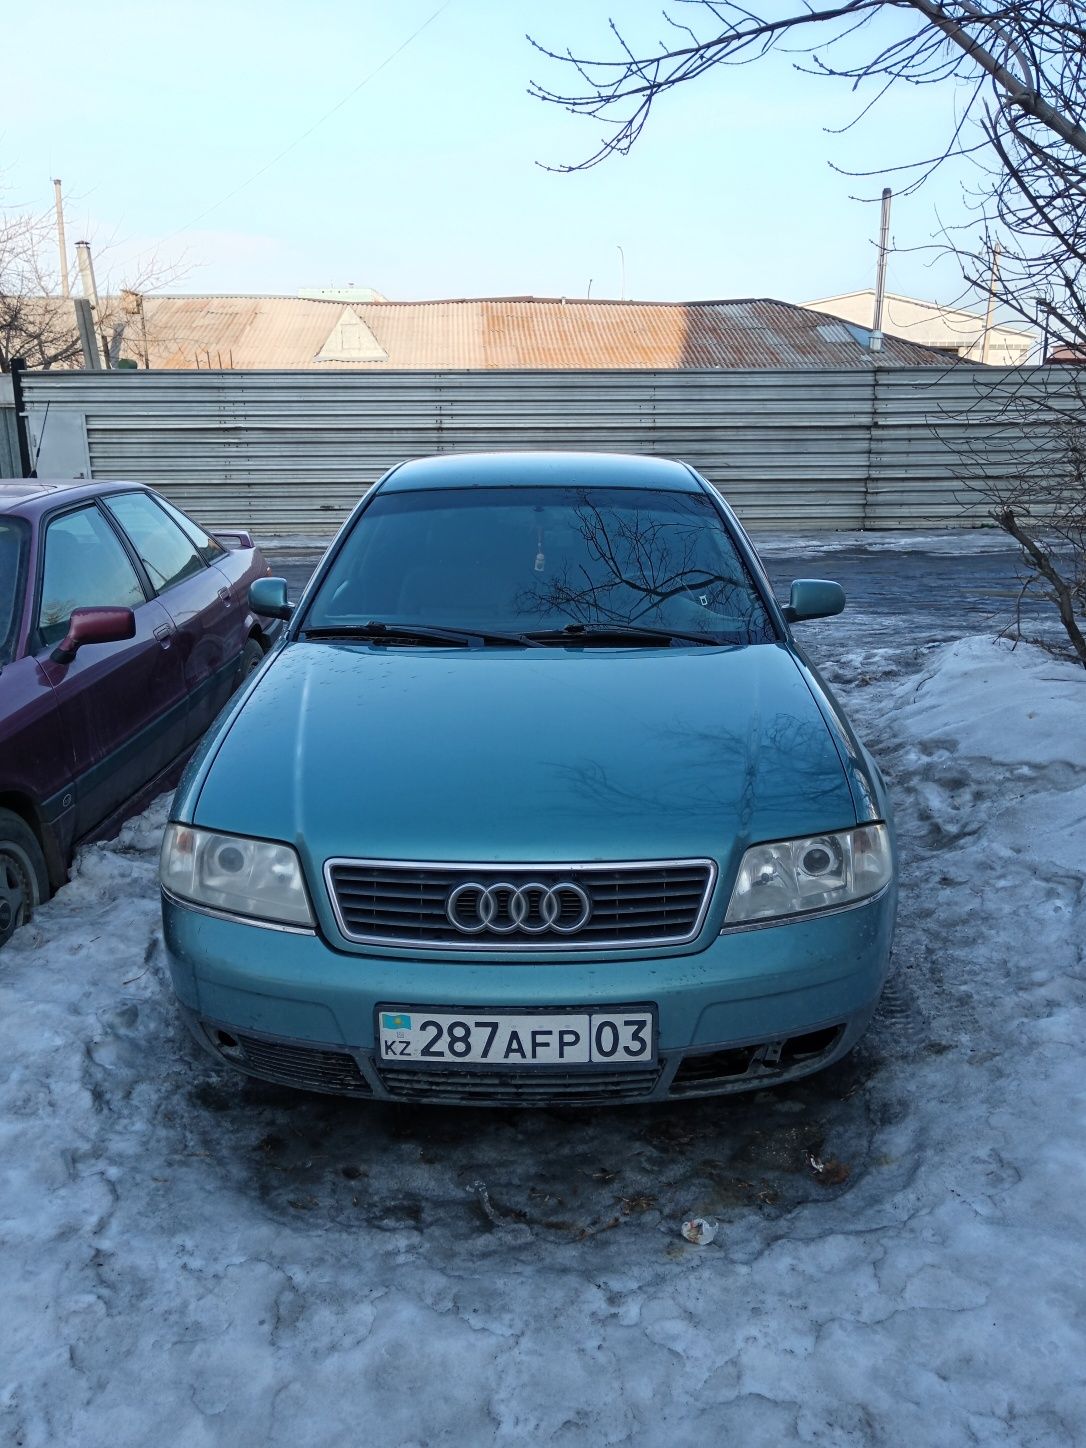 Audi a6 c5 1998, 2.8 объем полный привод